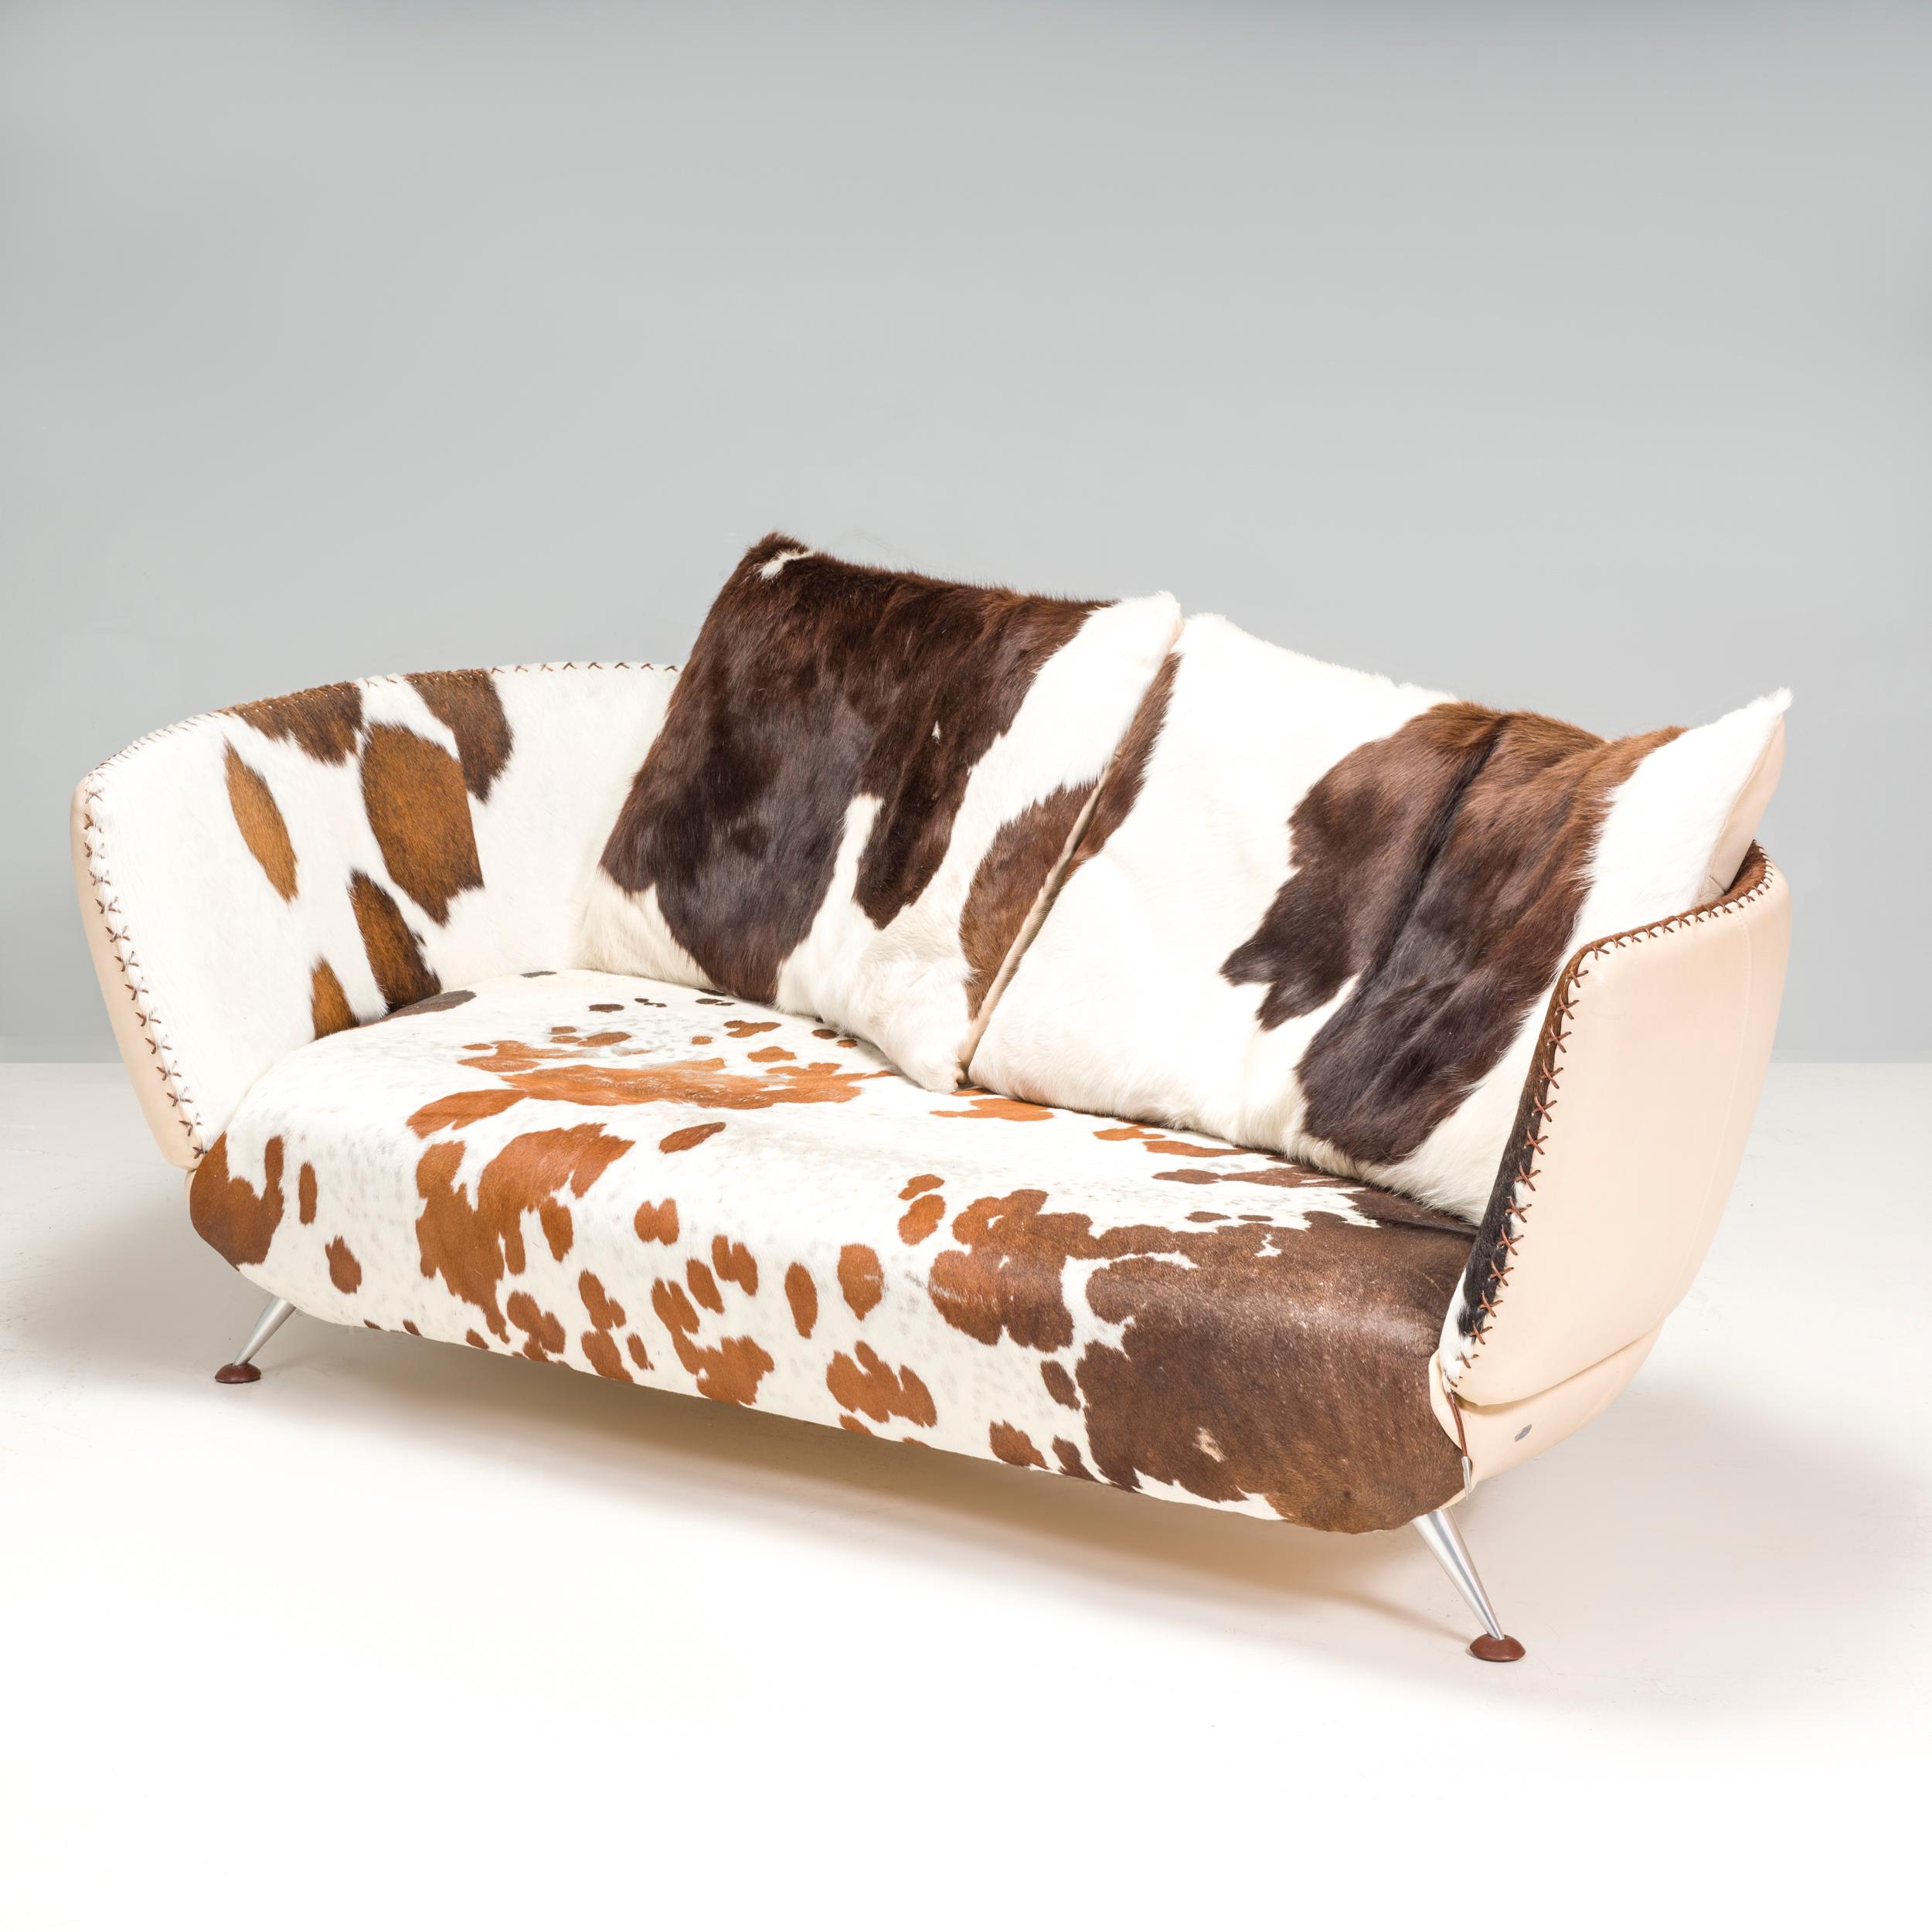 Conçu par Mathias Hoffman pour De Sede, le De Sede DS-102 est un canapé trois places doté d'une magnifique peau de poney tachetée dans un éventail de nuances. Le dossier en cuir crème du canapé complète les motifs bruns de la peau et contribue au